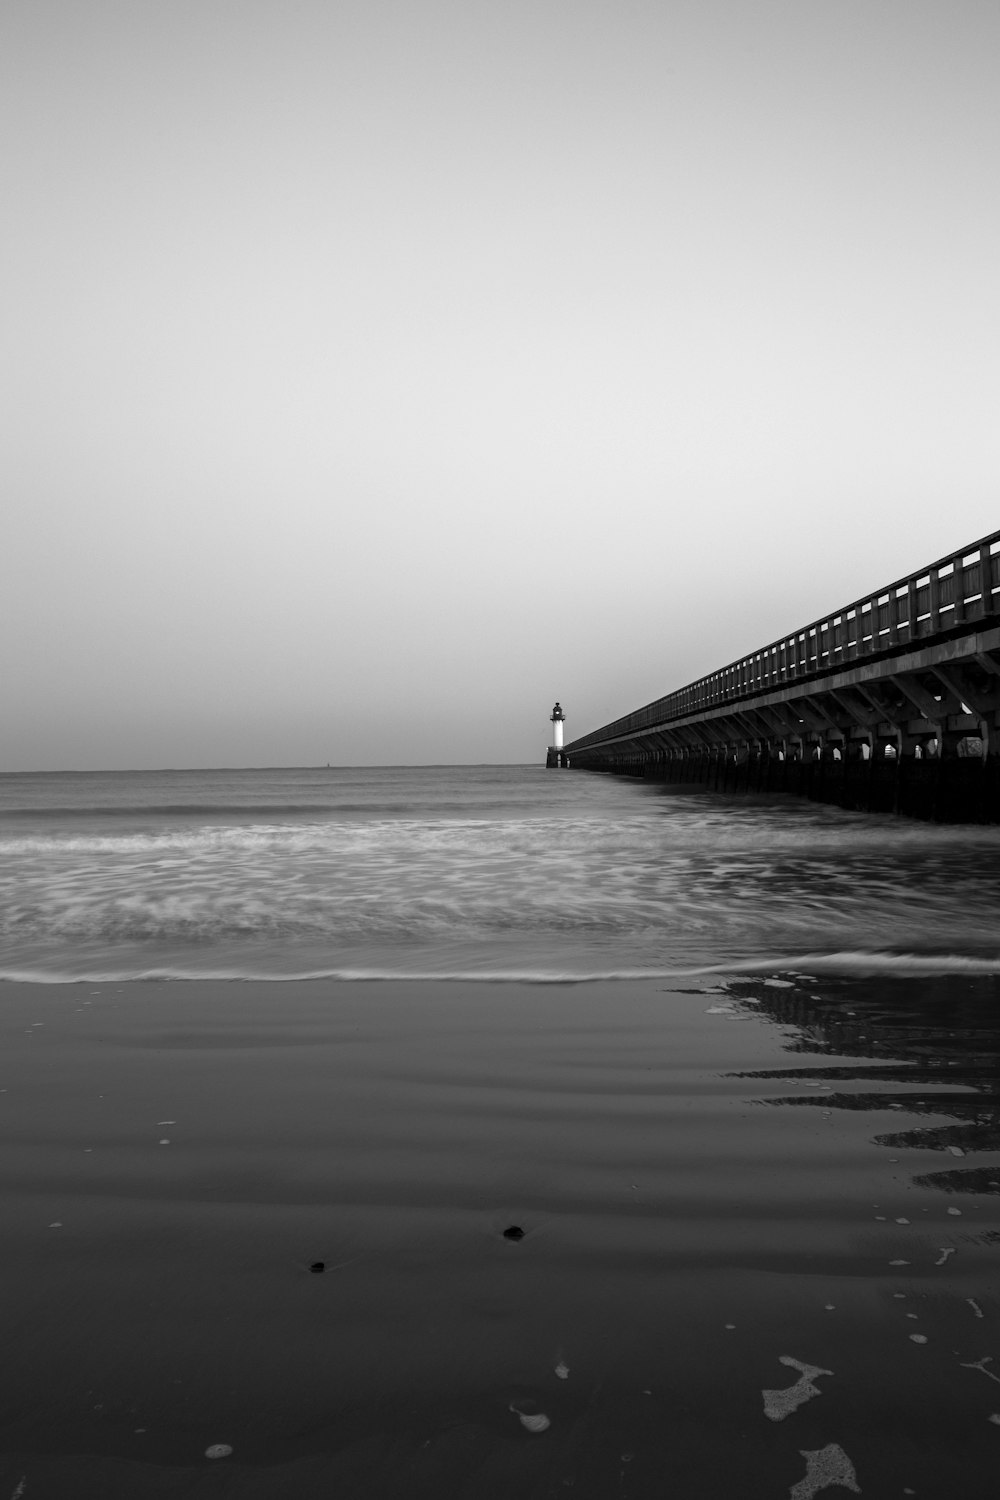 Foto en escala de grises de un muelle de madera en el mar